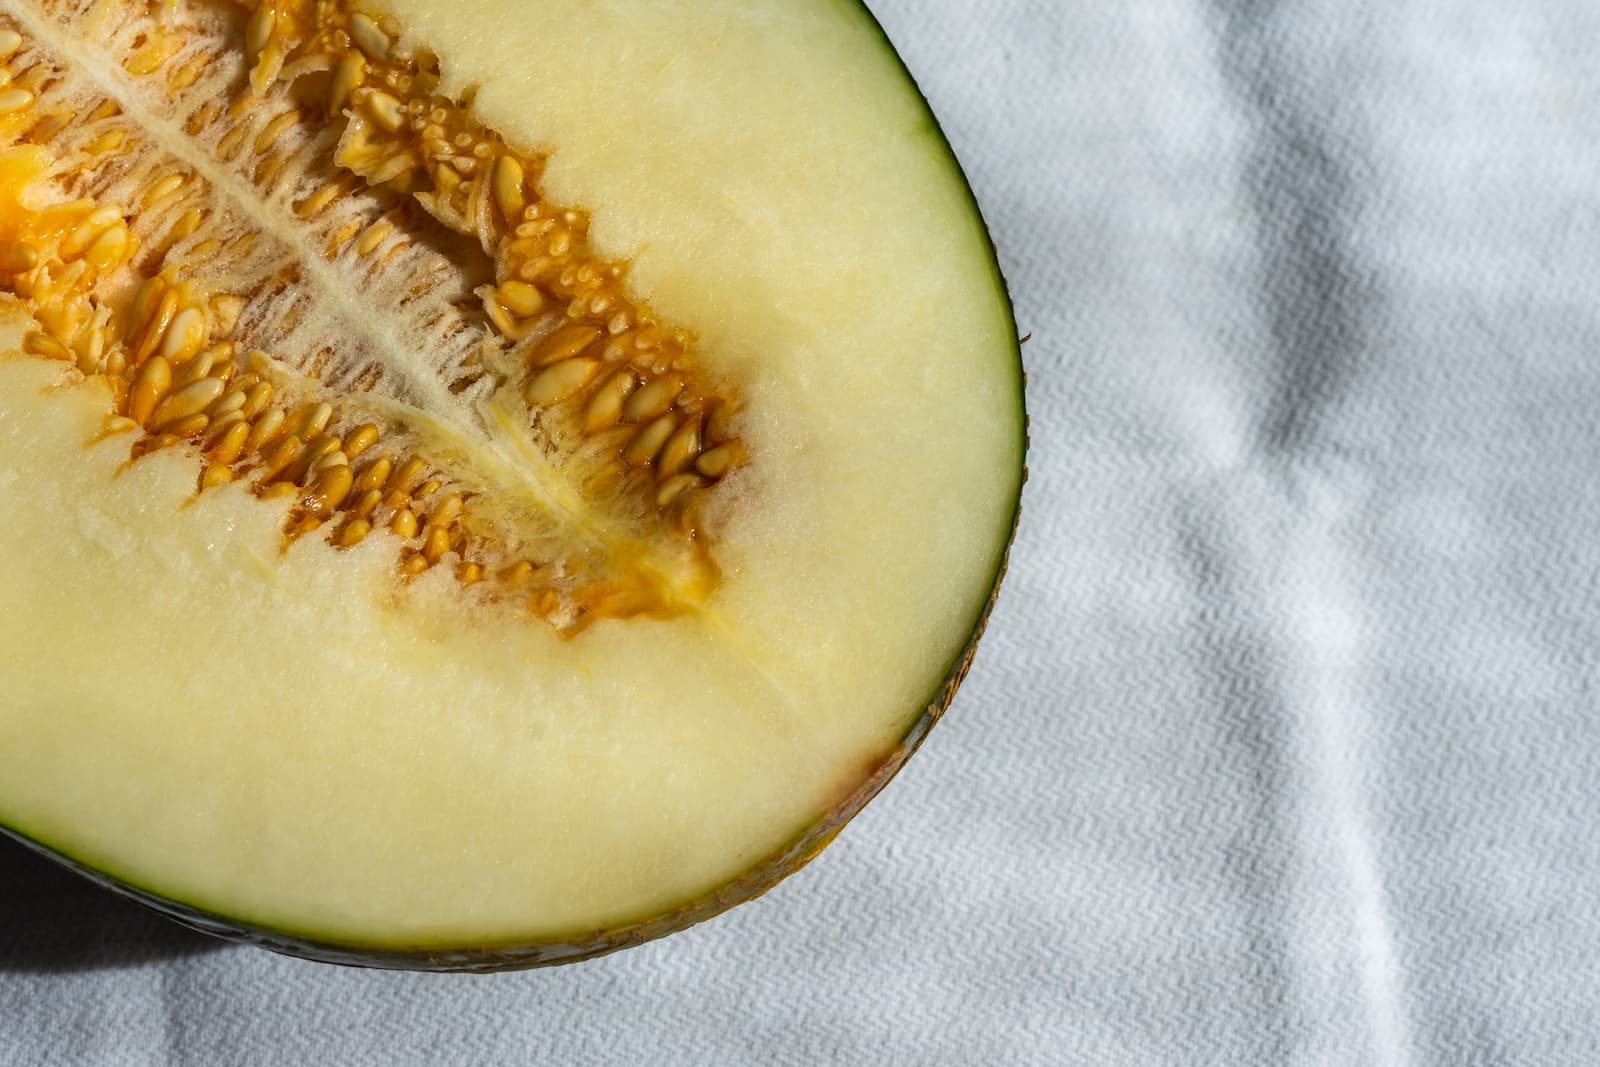 Le melon: un fruit sucré et juteux pour égayer vos plats